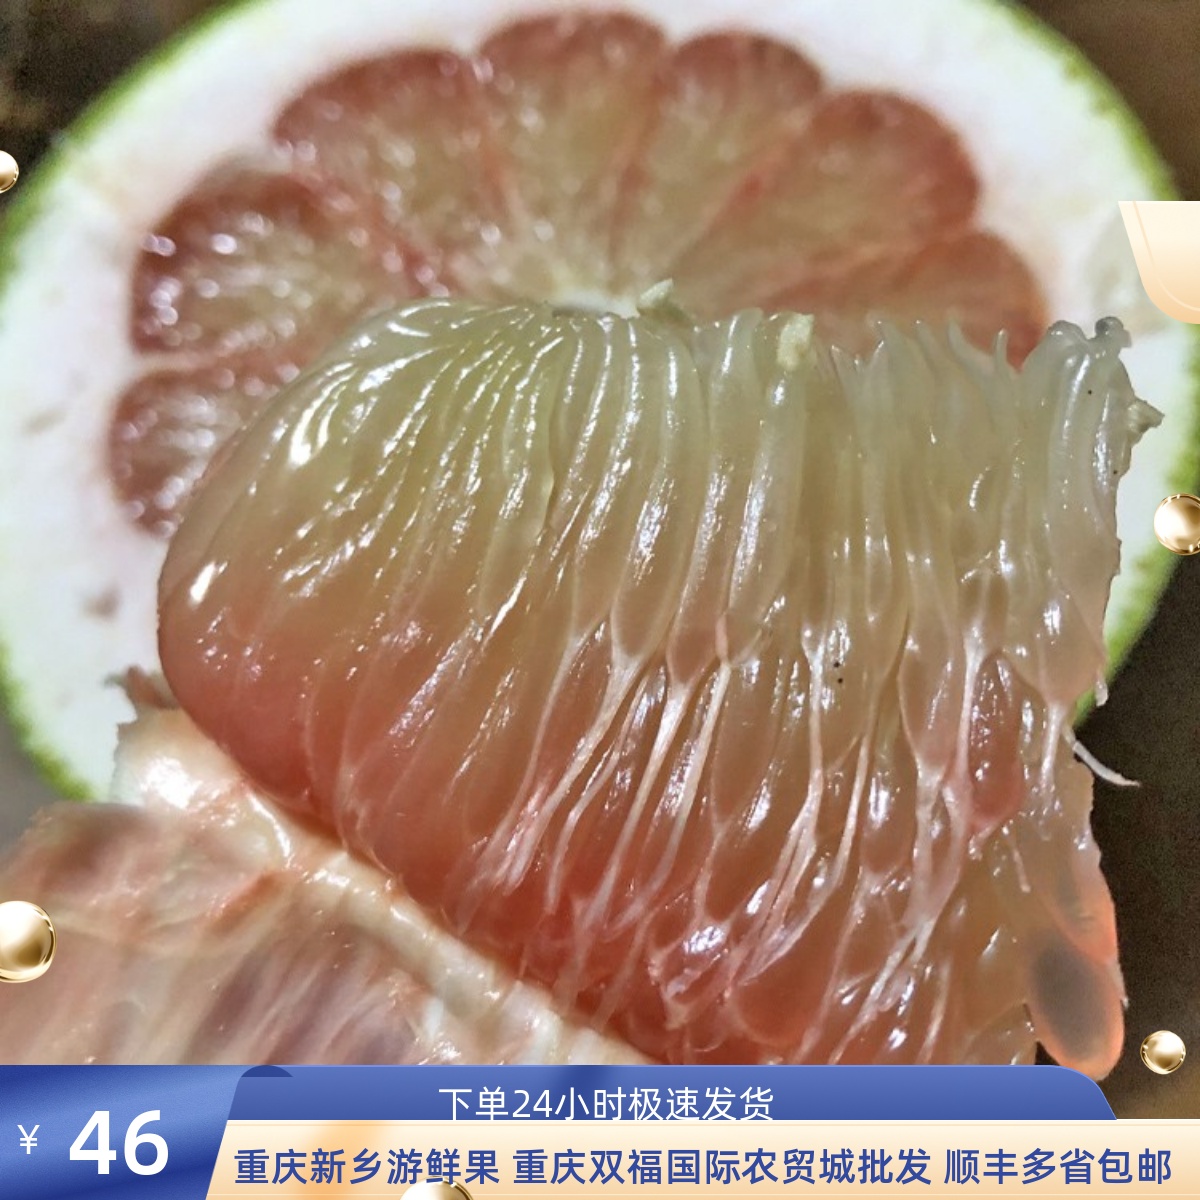 越南金柚红宝石翡翠红柚重庆双福水果新鲜顺丰包邮当季进口绿柚子